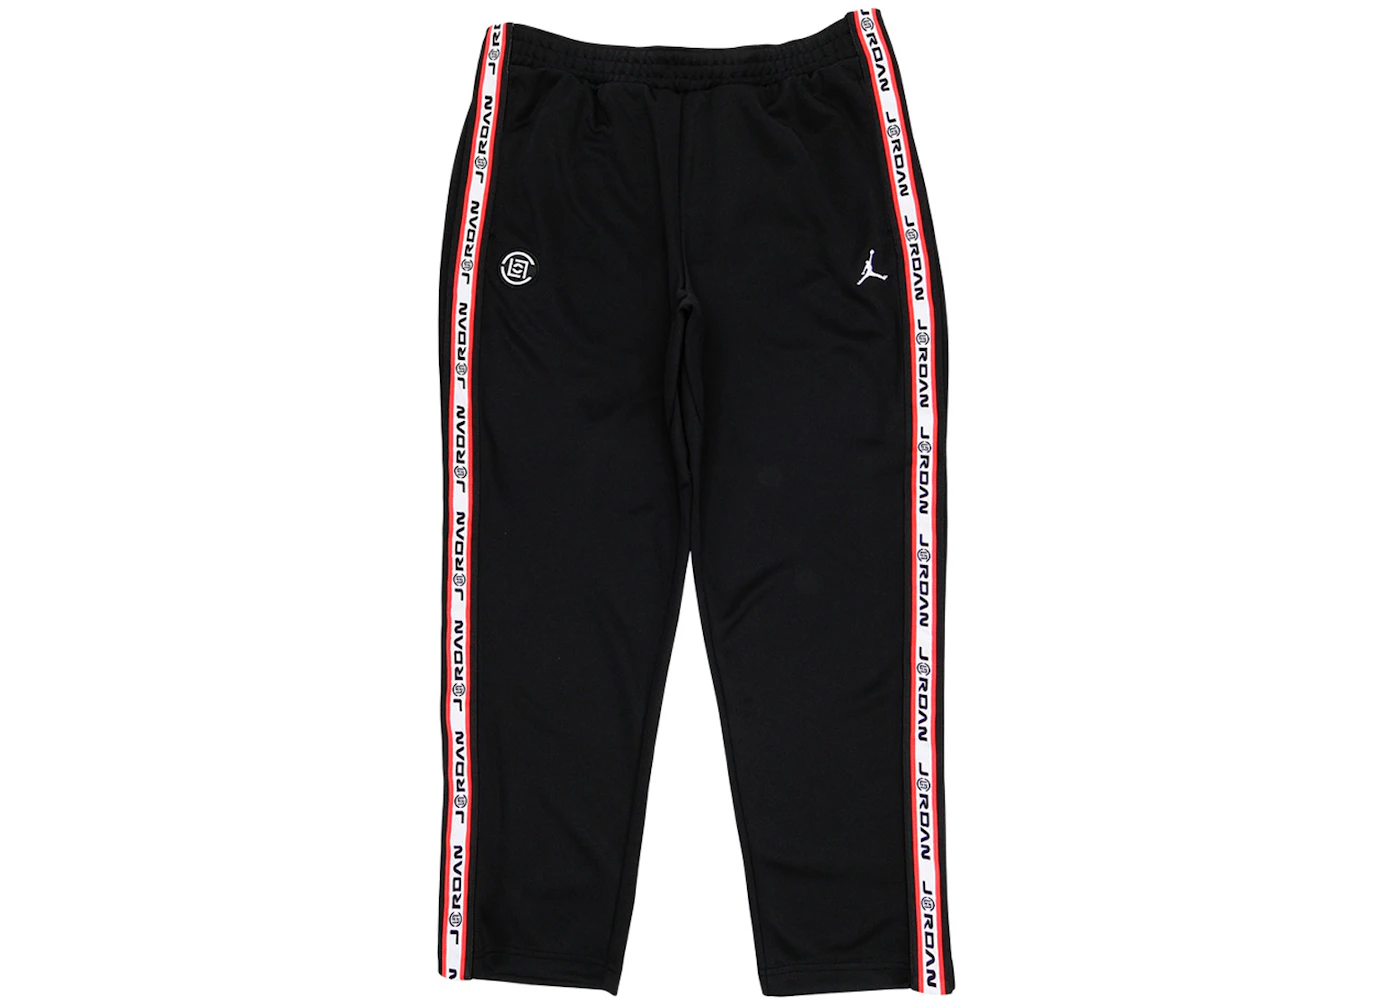 Jordan x CLOT NRG Track Pants Black/White/Red Men's - US